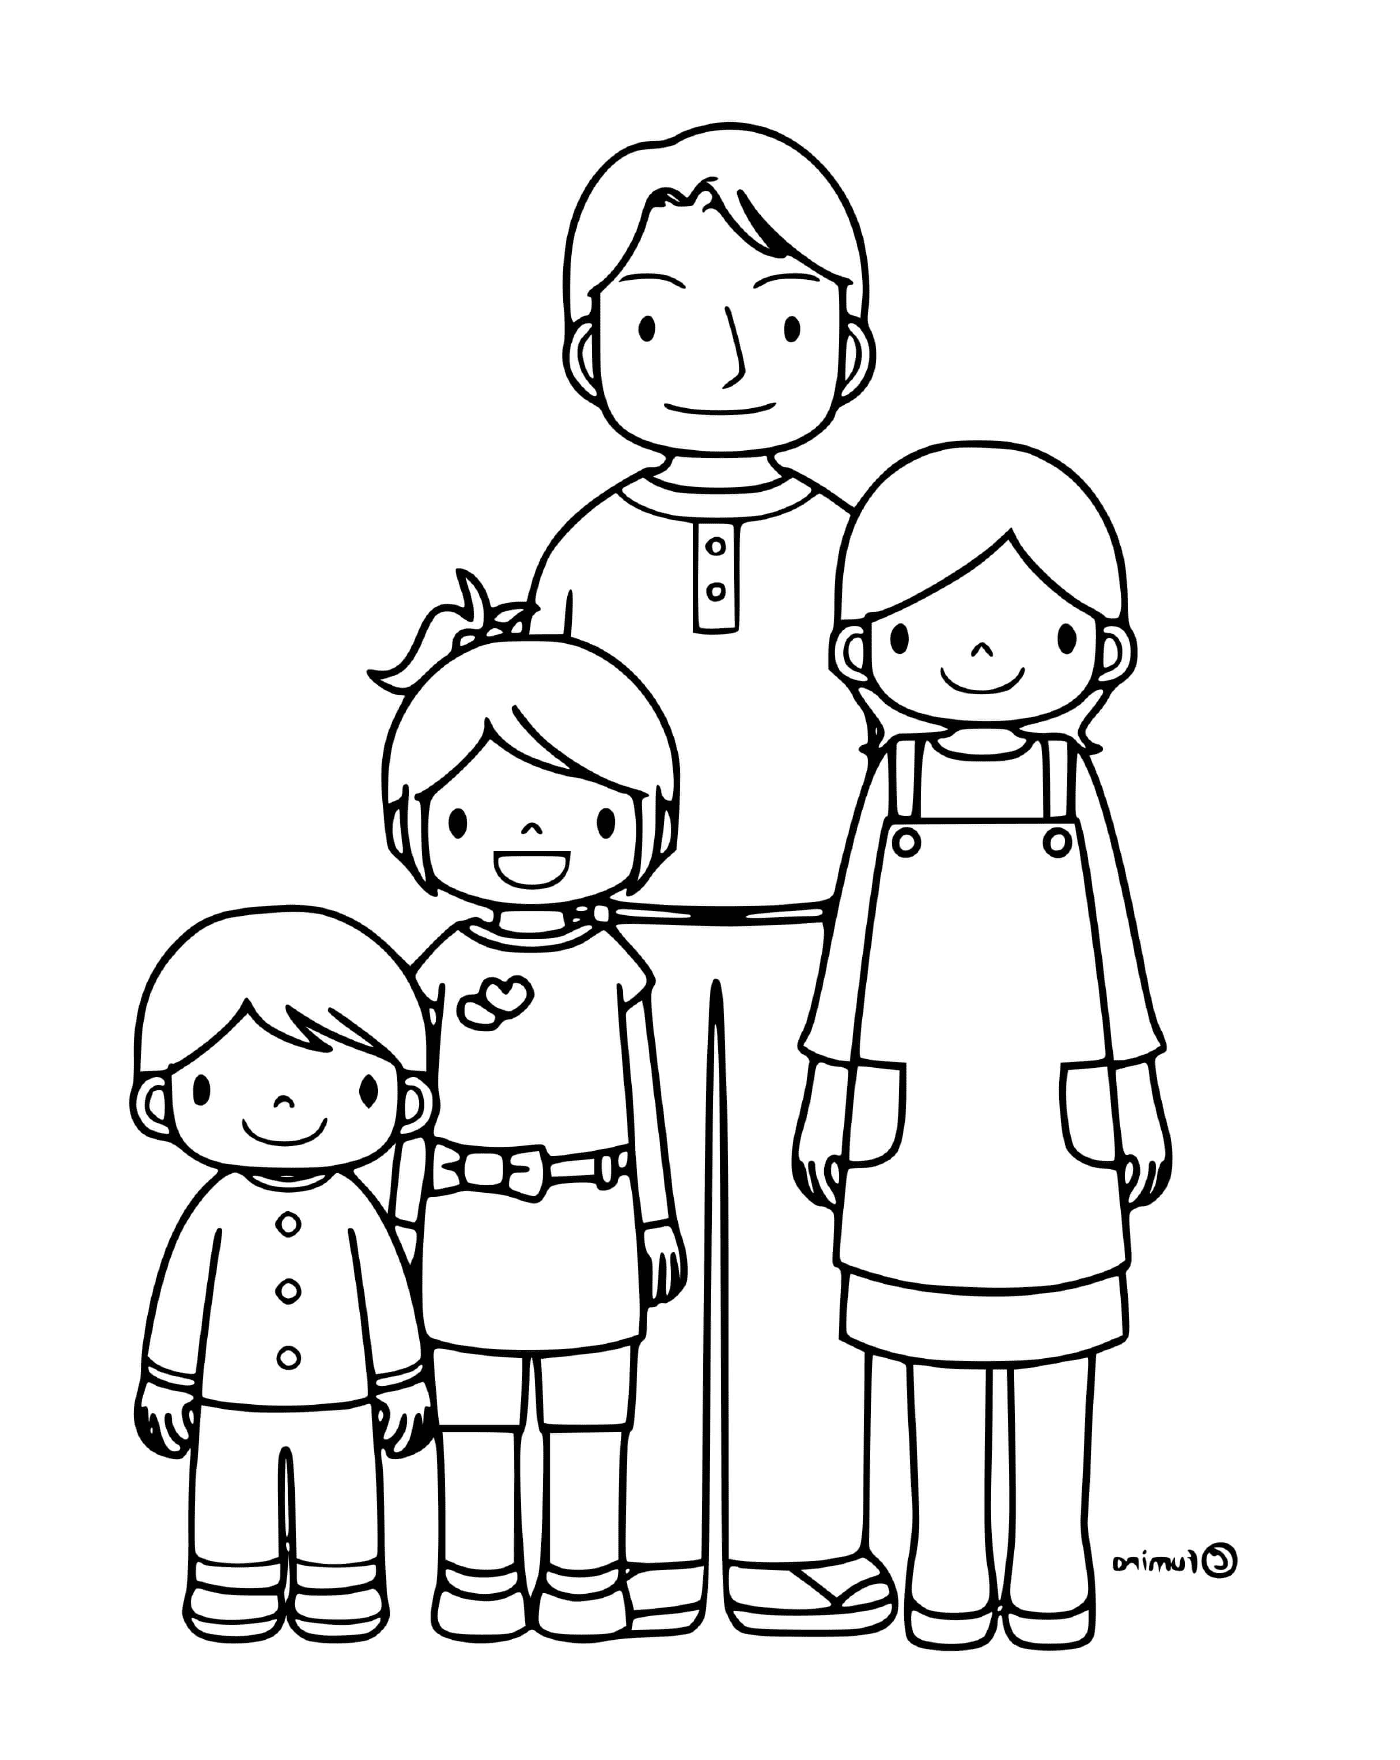   Une famille de quatre personnes réunies 